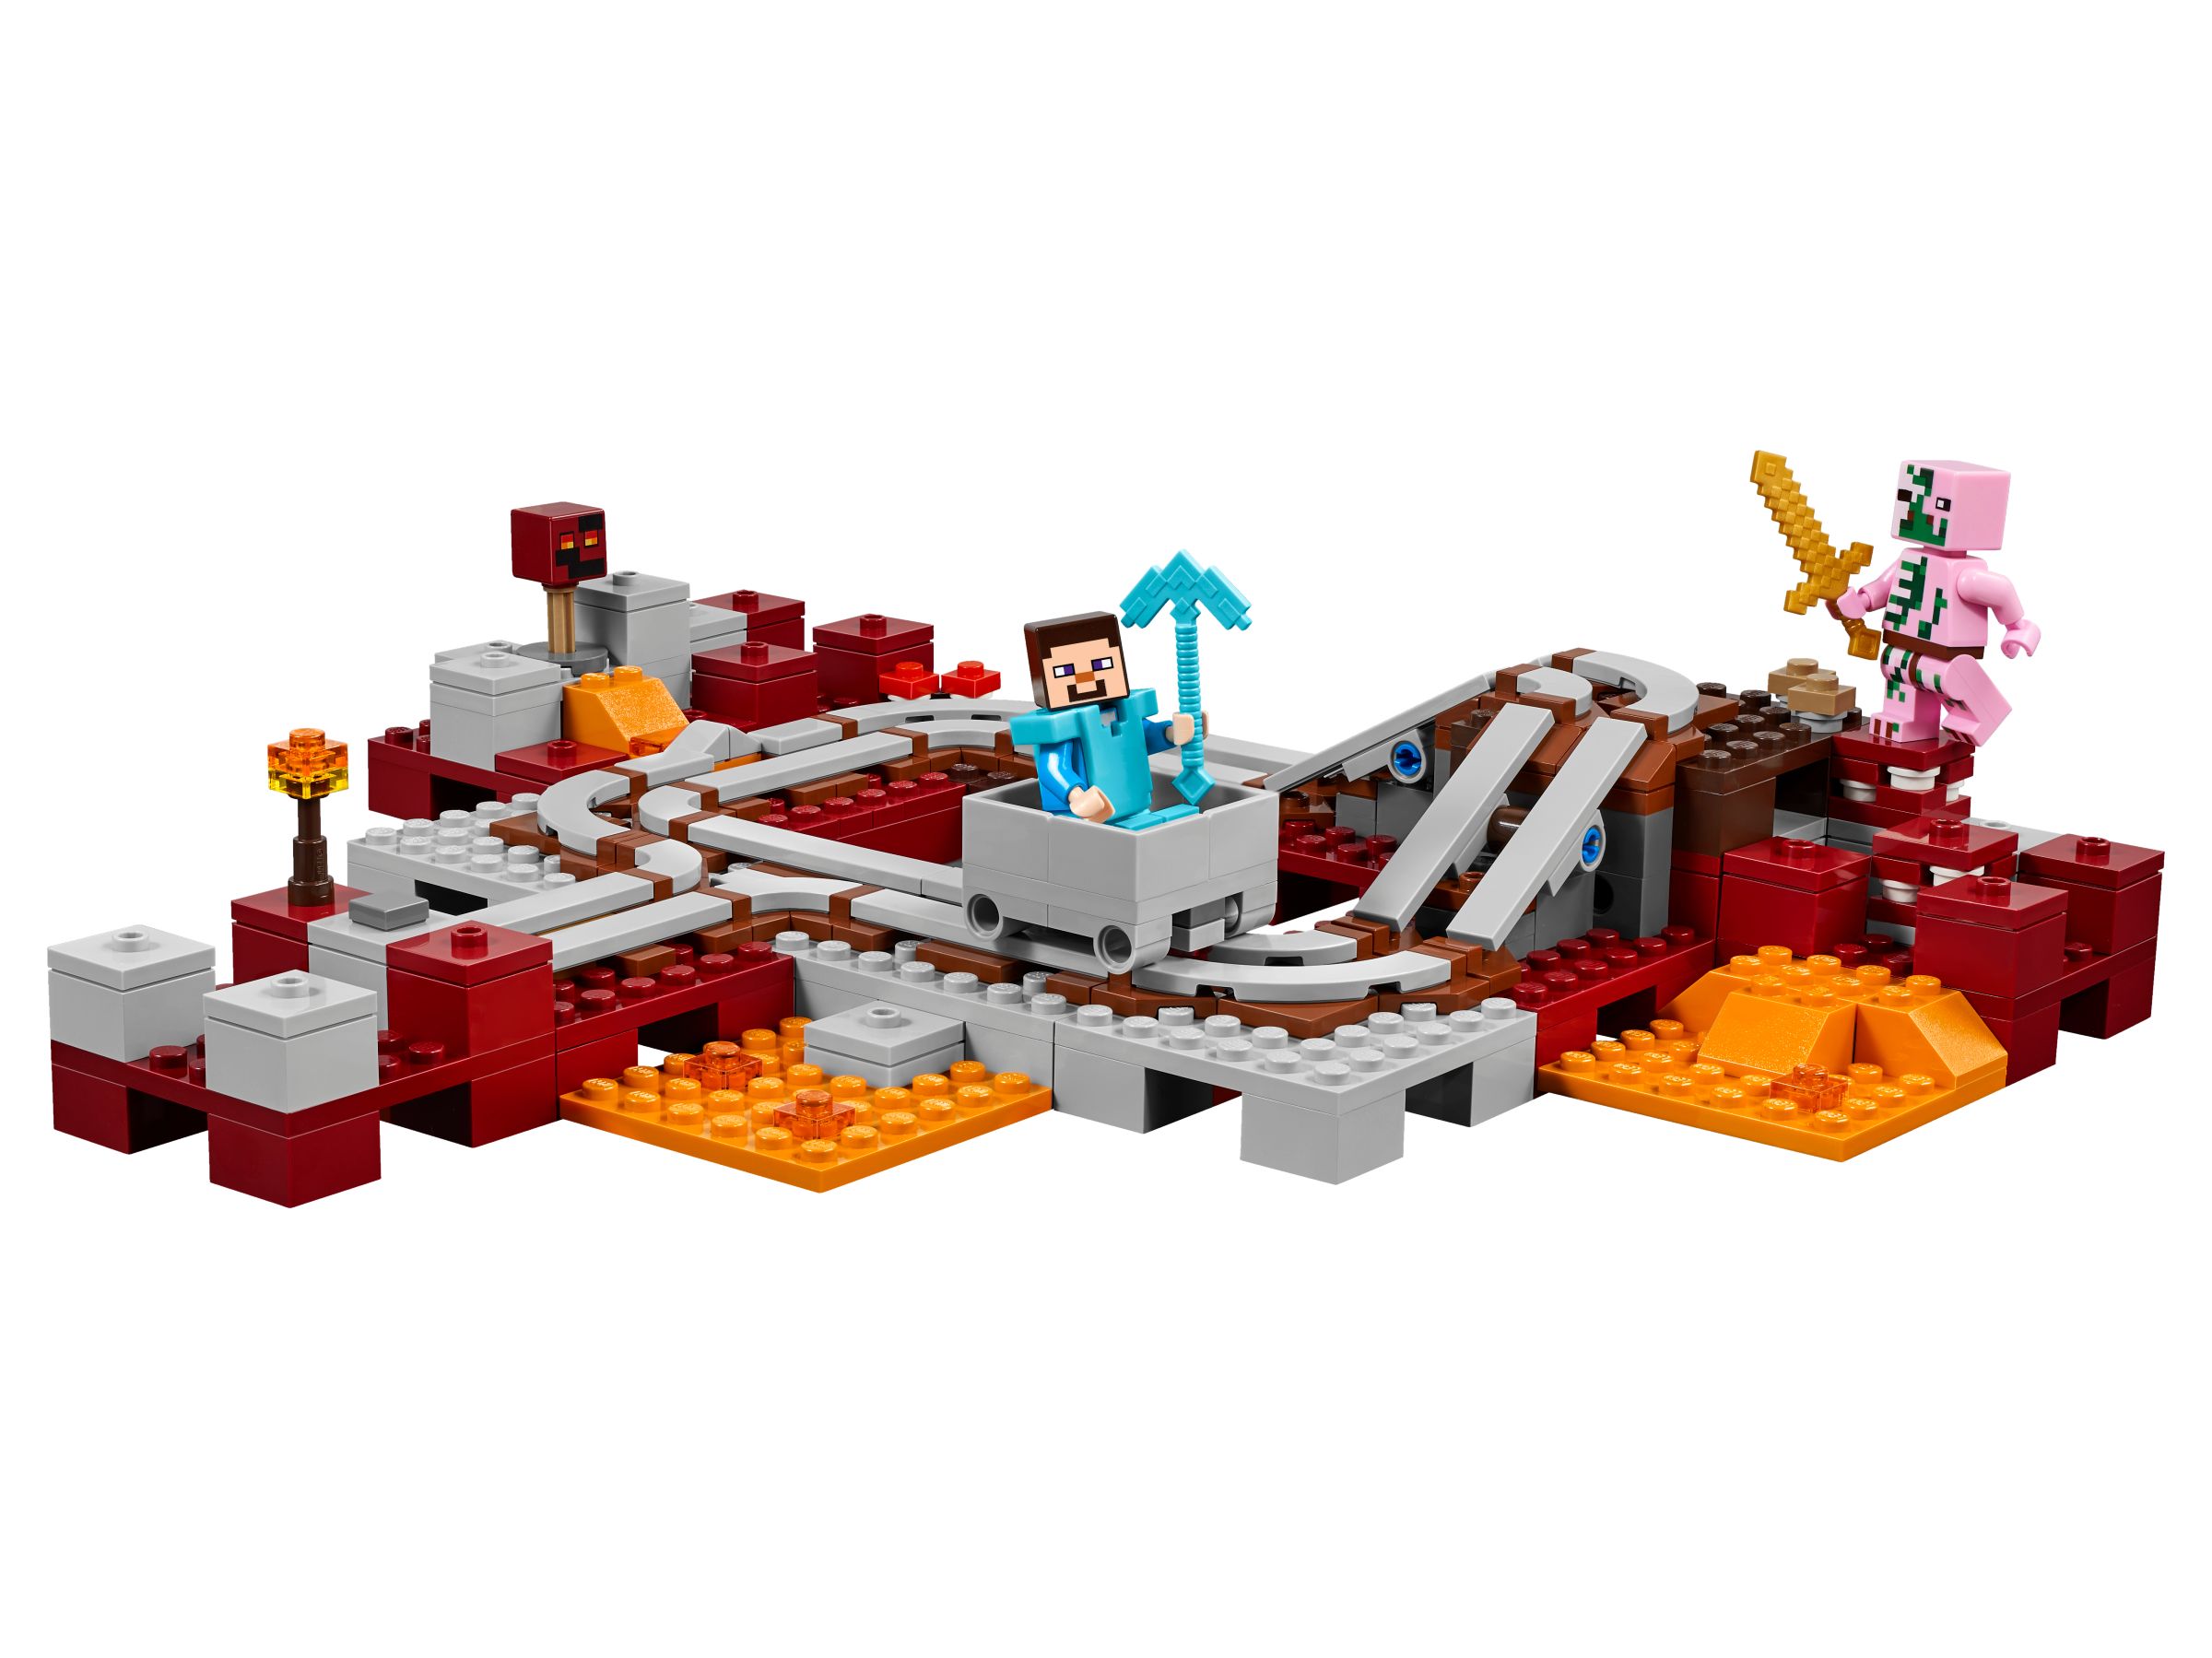 LEGO Minecraft 21130 Die Nether-Eisenbahn LEGO_21130_alt2.jpg